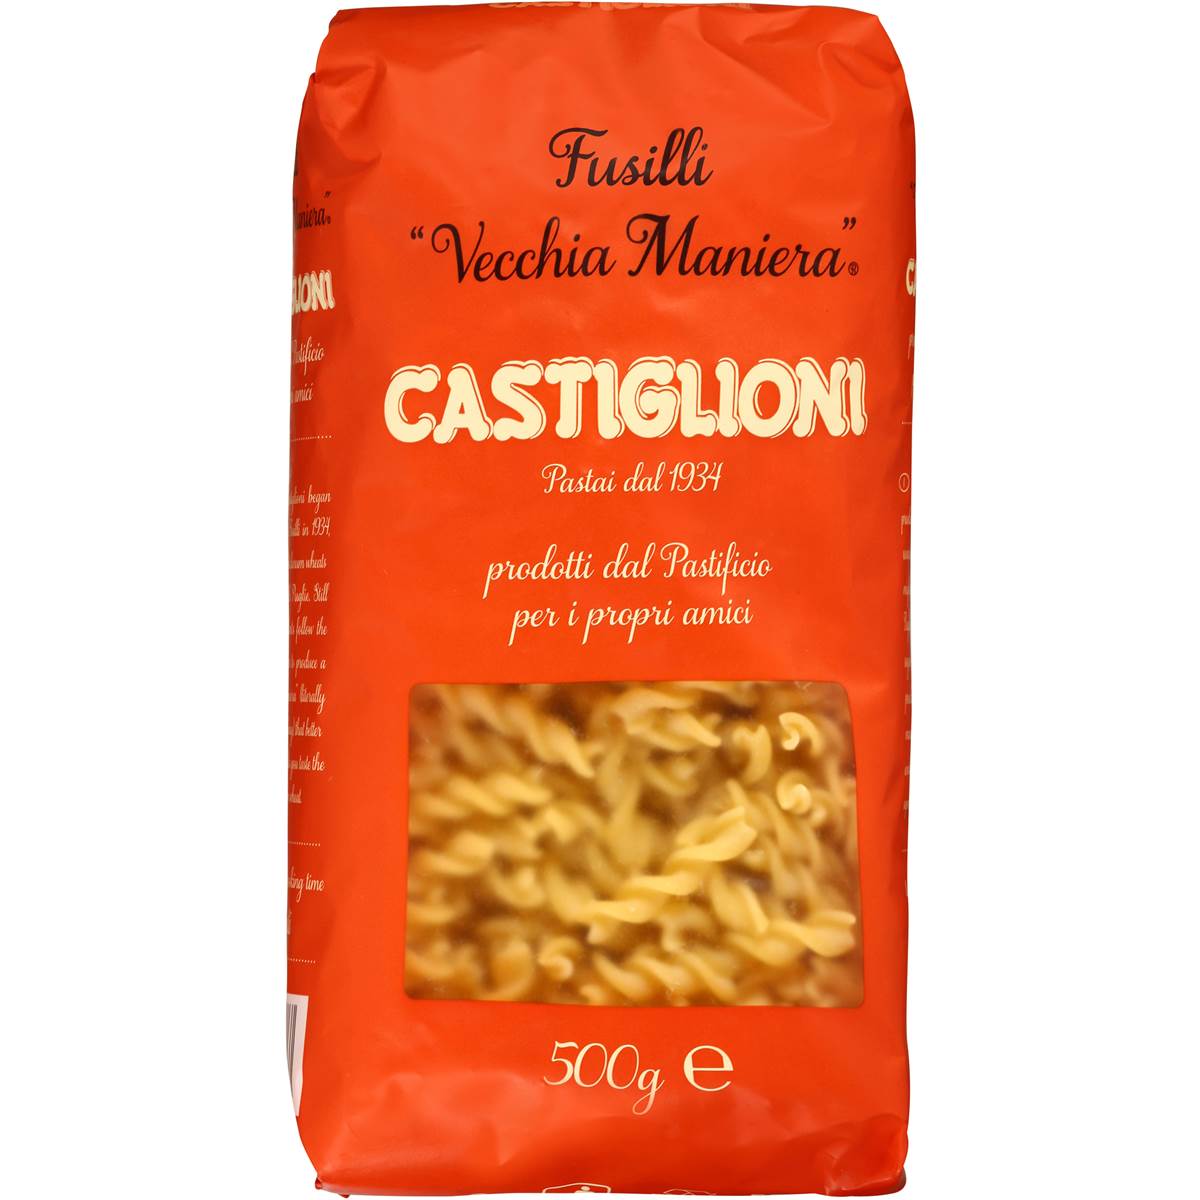 Castiglioni Fusilli Pasta 